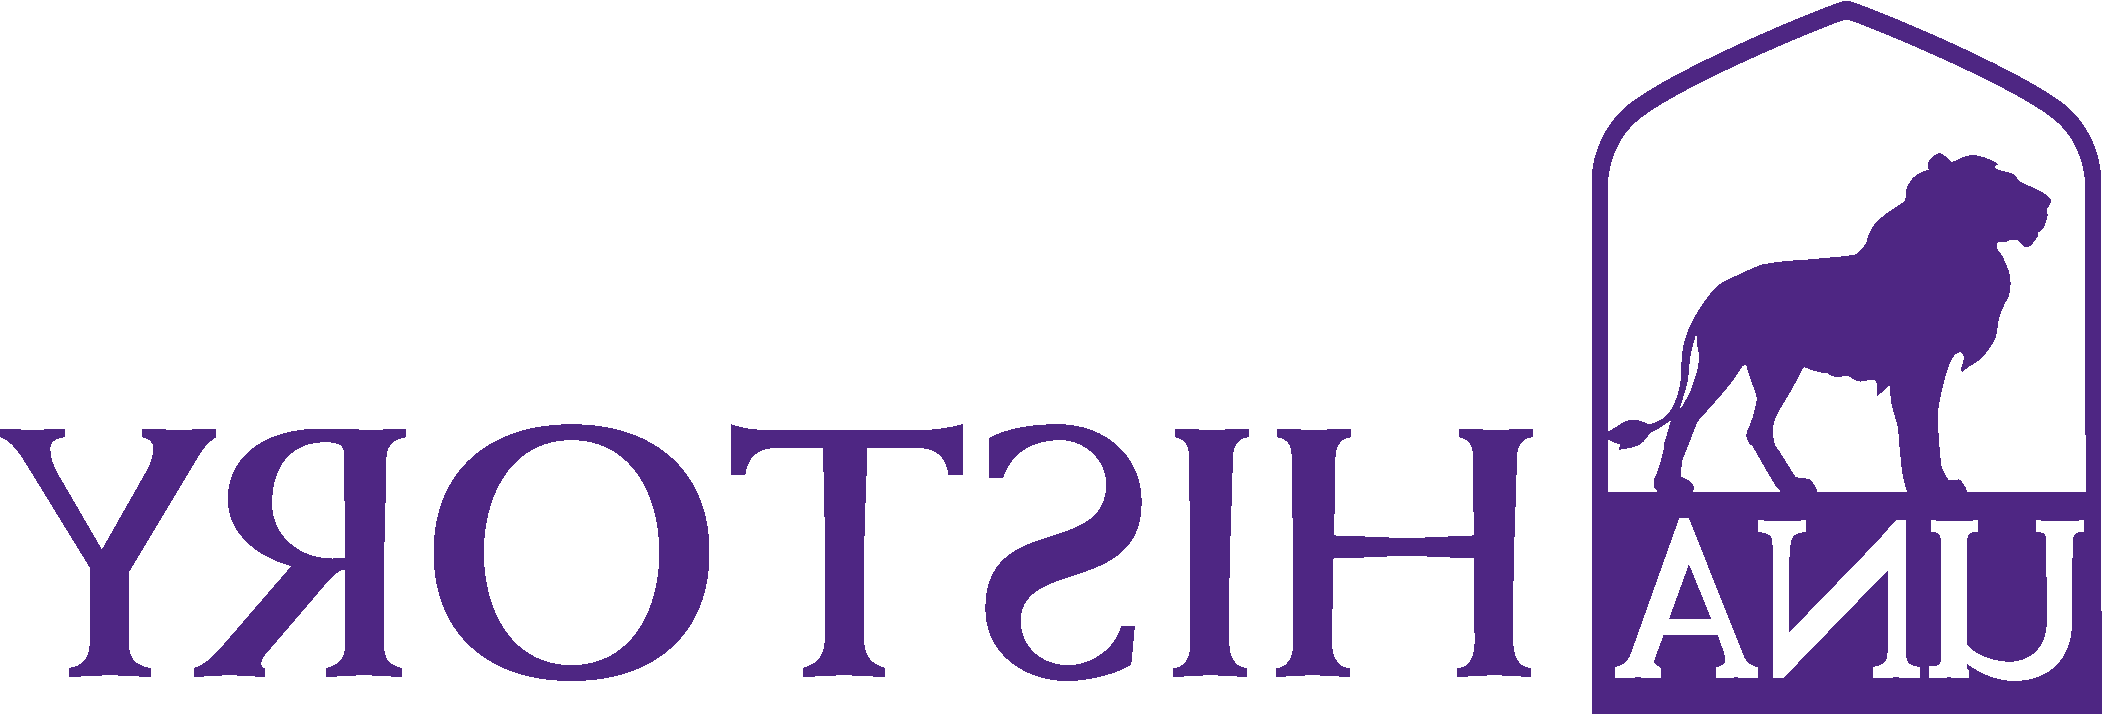 History logo 3